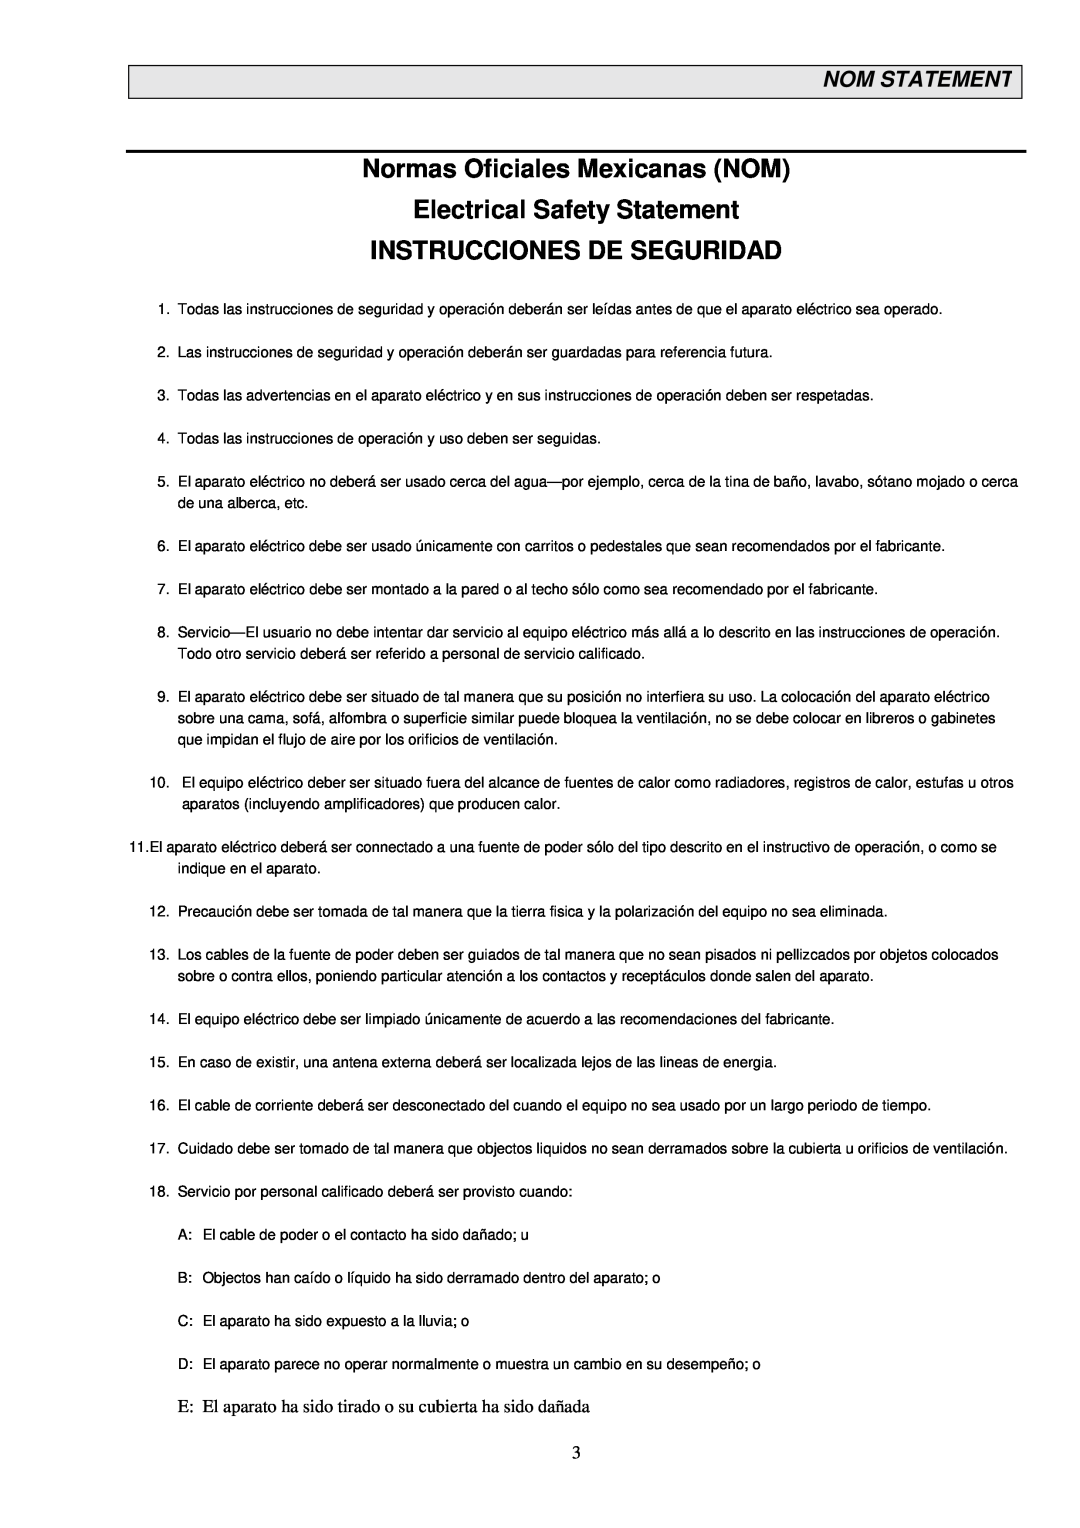 Black Box LB1351A Normas Oficiales Mexicanas NOM Electrical Safety Statement, Instrucciones De Seguridad, Nom Statement 